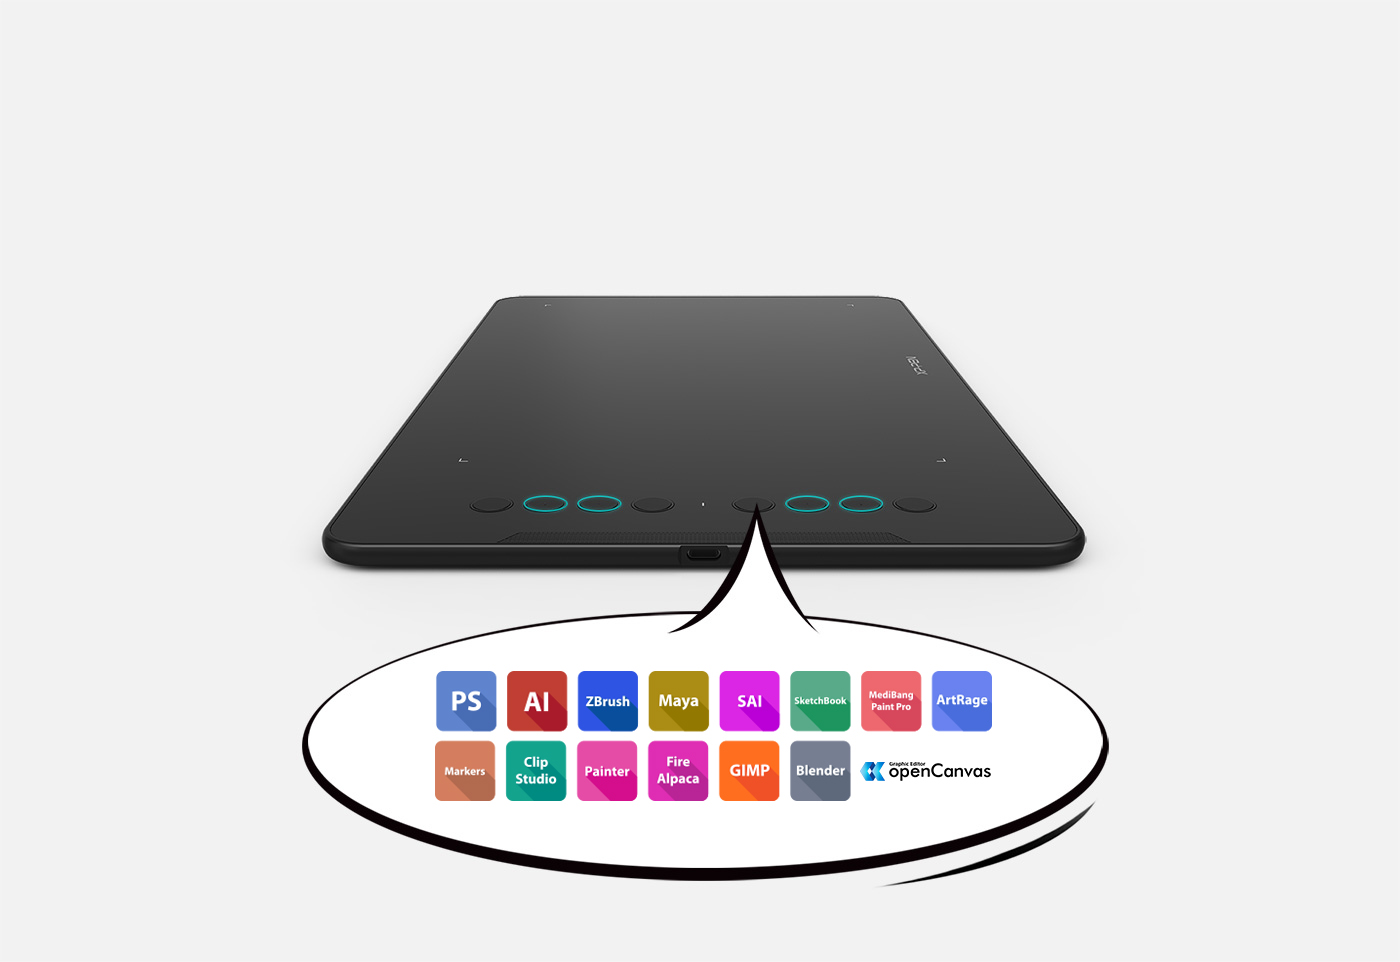 La tableta de arte digital XP-Pen Deco 01 V2 cuenta con ocho teclas rápidas redondas personalizables